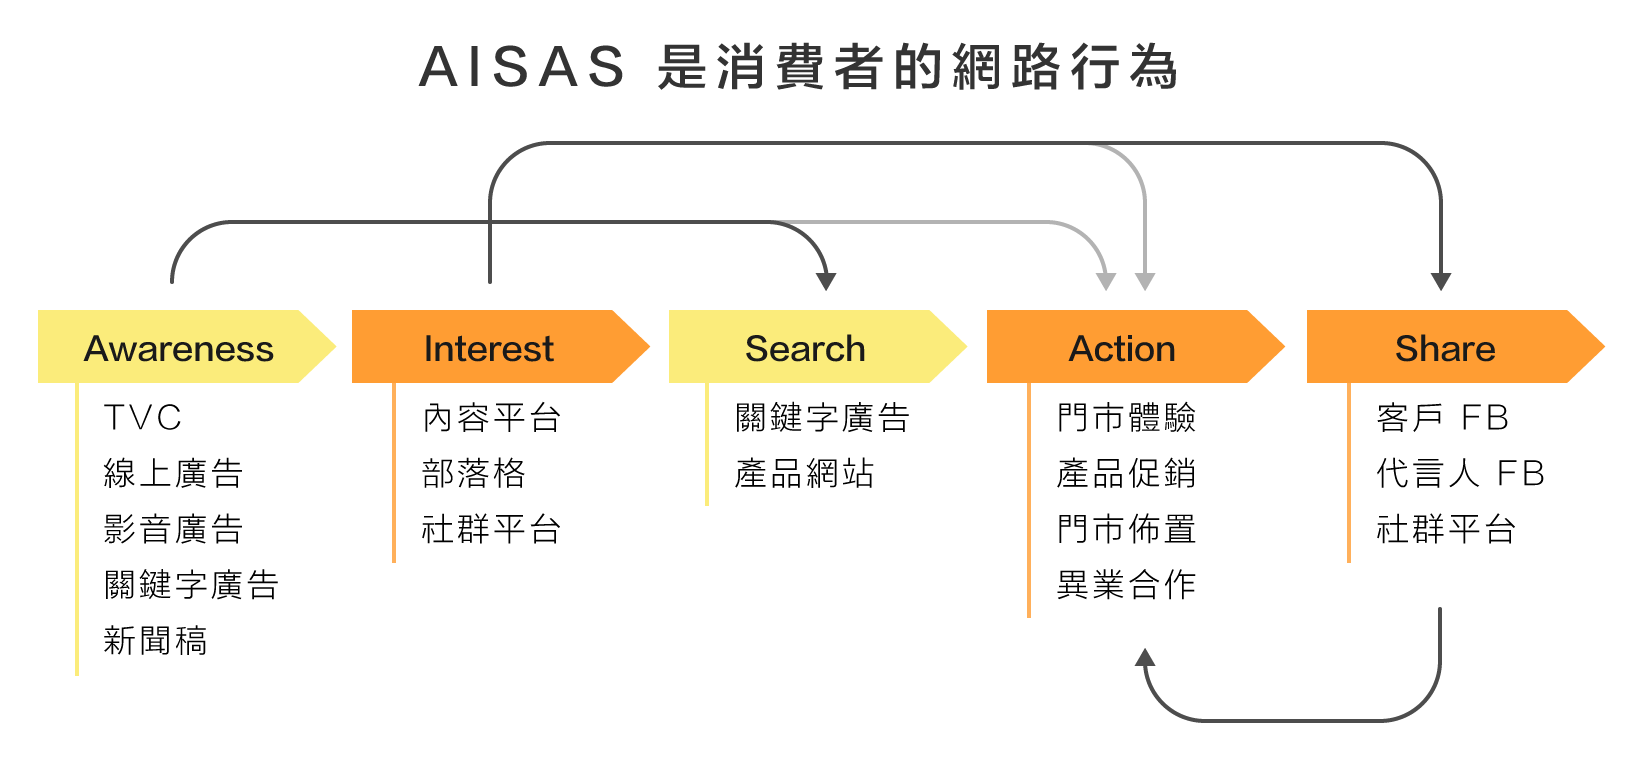 AISAS是消費者的網路行為